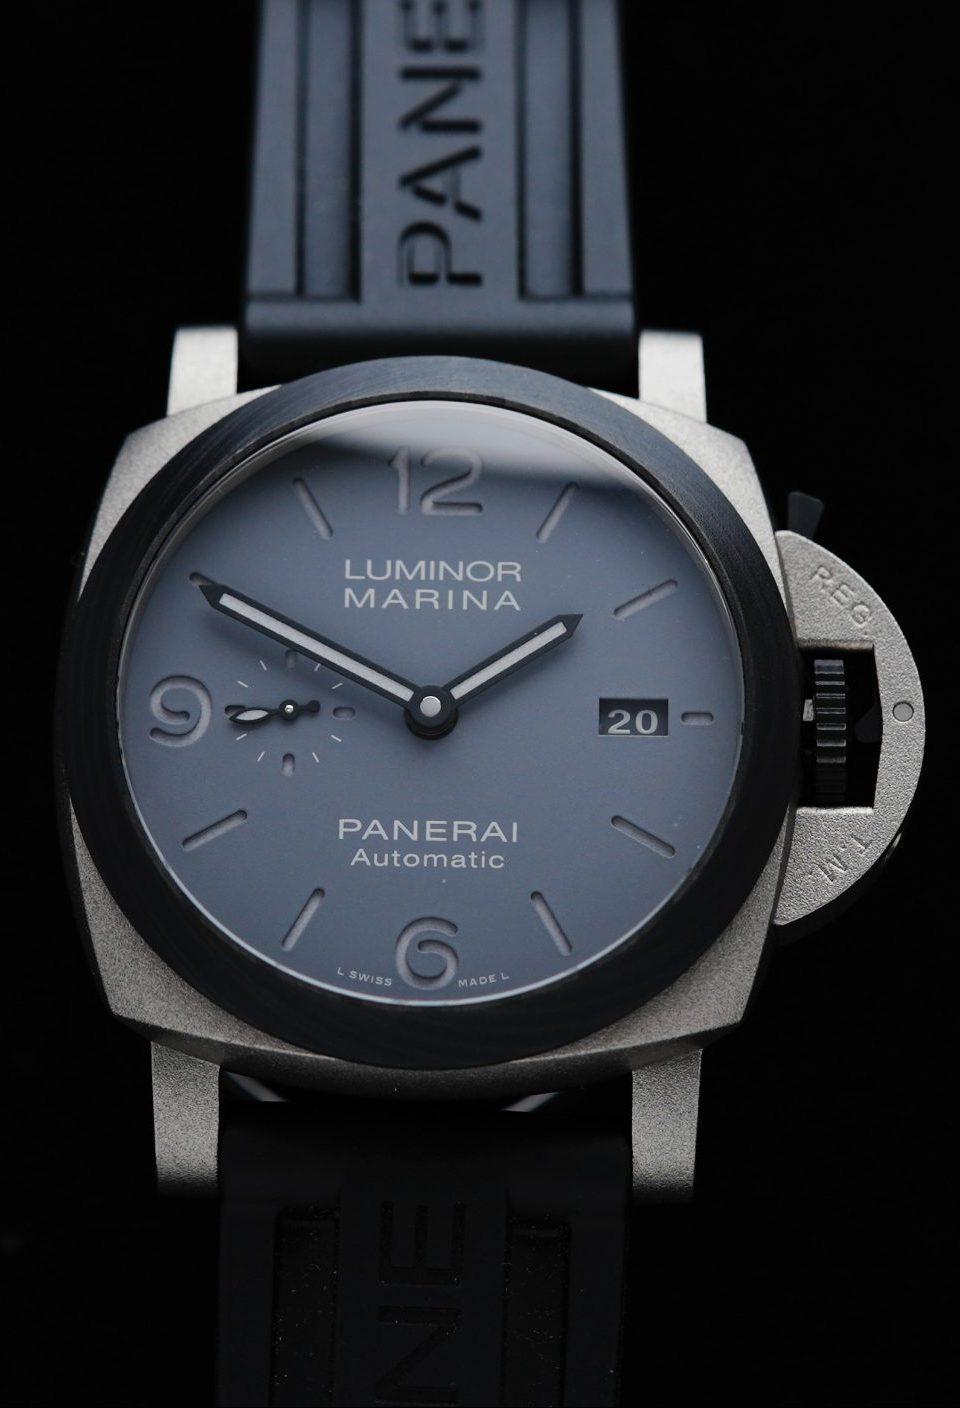 Panerai Luminor Marina Pam01662 44mm watch featured under white light.